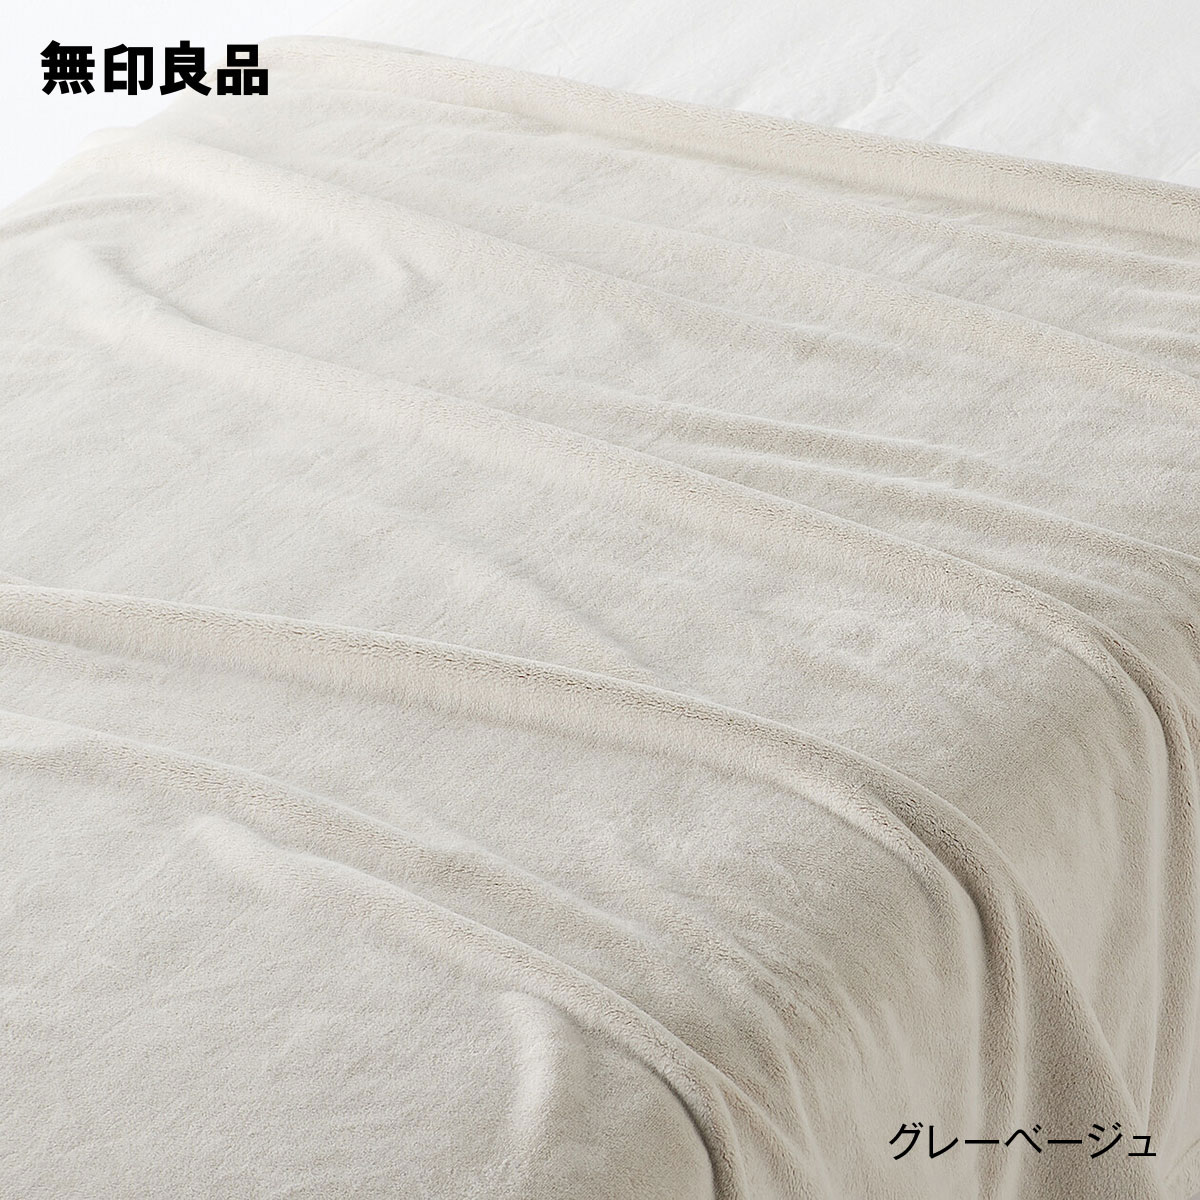 【無印良品 公式】【シングル】薄手 やわらか毛布・140 200cm